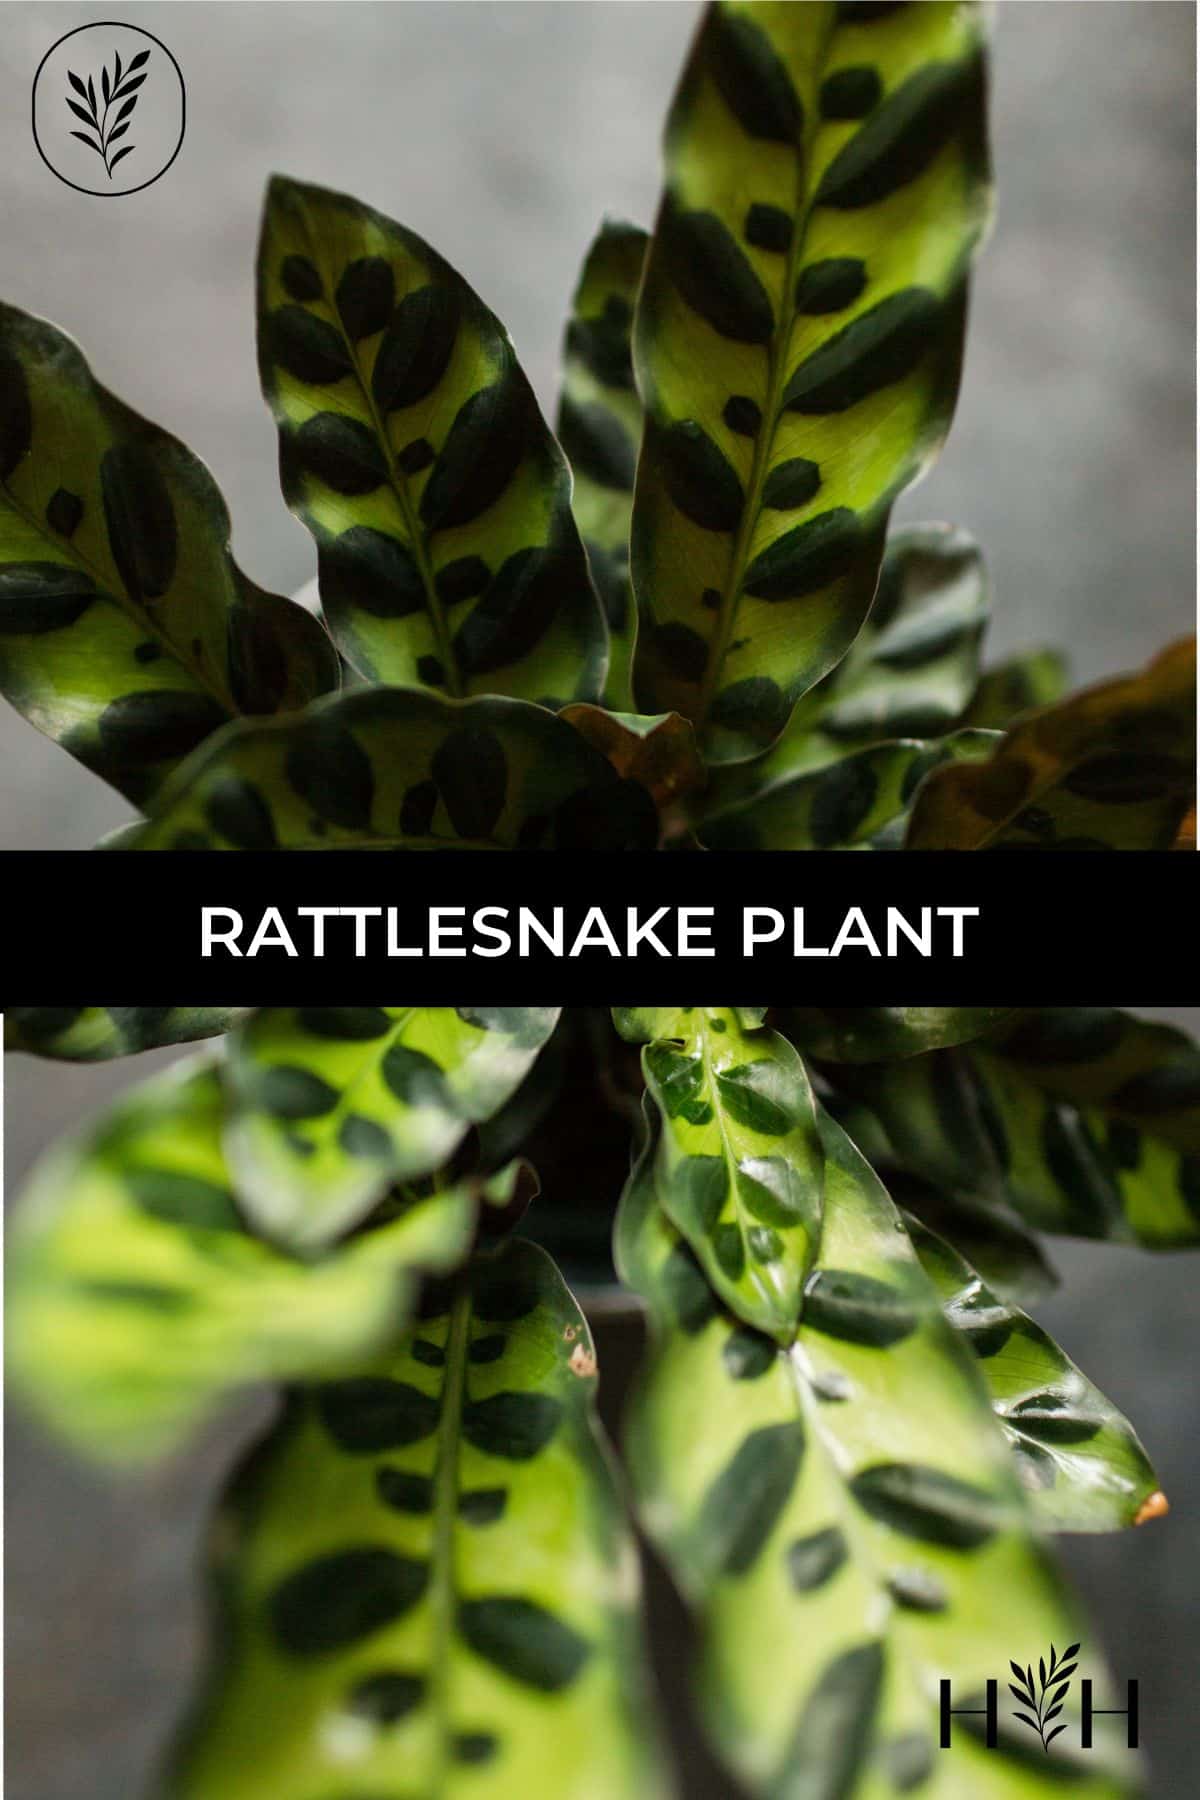 Rattlesnake plant via @home4theharvest